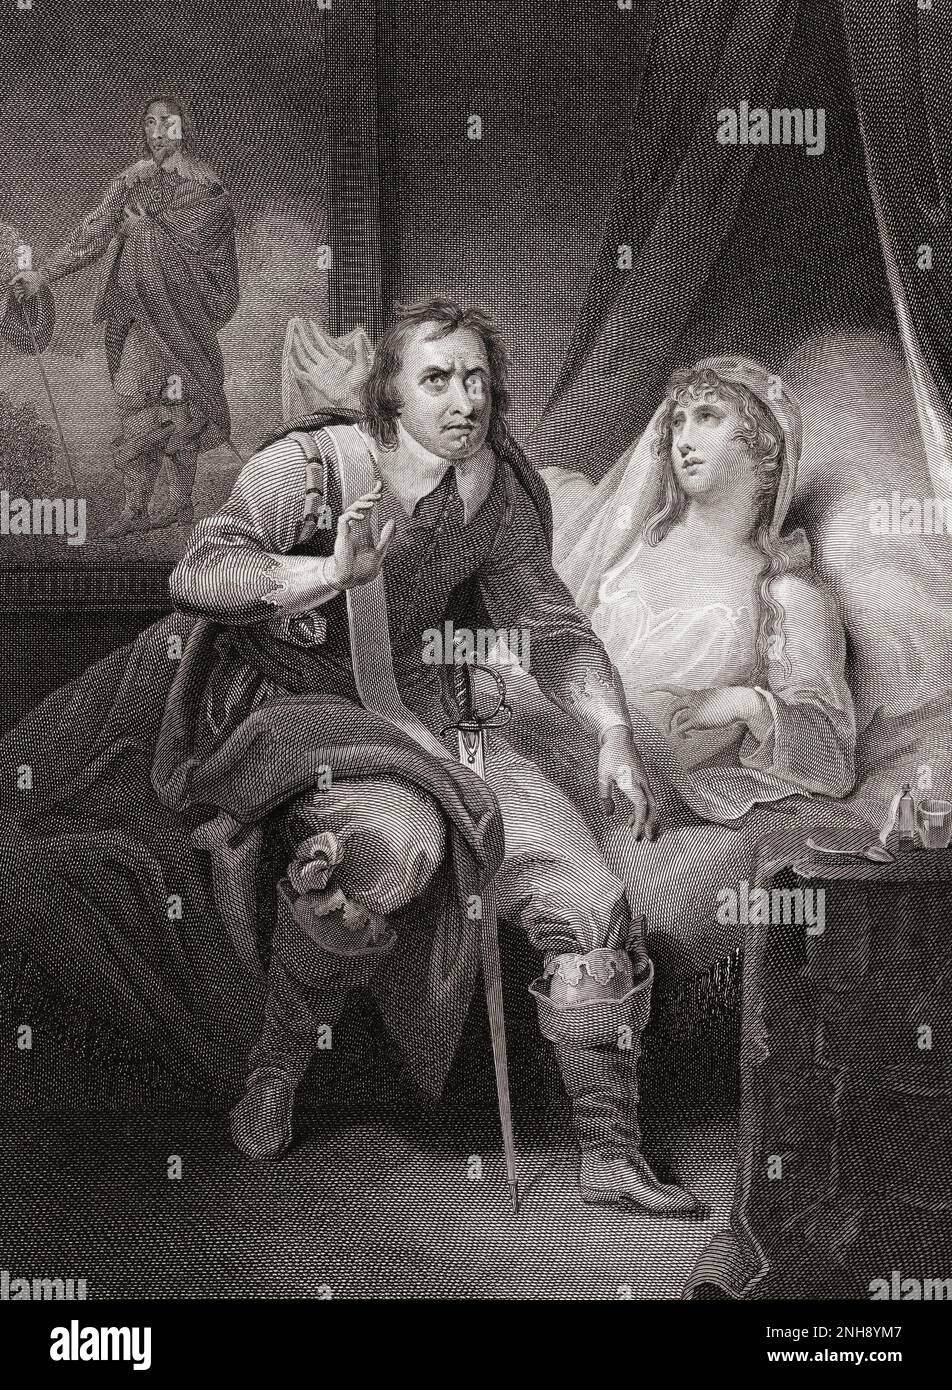 Oliver Cromwells Tochter, Elizabeth Claypole, 1629 - 1658 Jahre alt, lag auf ihrem Krankenbett und flehte ihren Vater an, nachsichtig mit politischen Gegnern zu sein. Nach einem Abdruck von James Stow aus einem Werk von Henry Tresham, das ursprünglich in der historischen Galerie von Robert Bowyer, die zwischen 1793 und 1806 erschienen ist, zu sehen war. Stockfoto